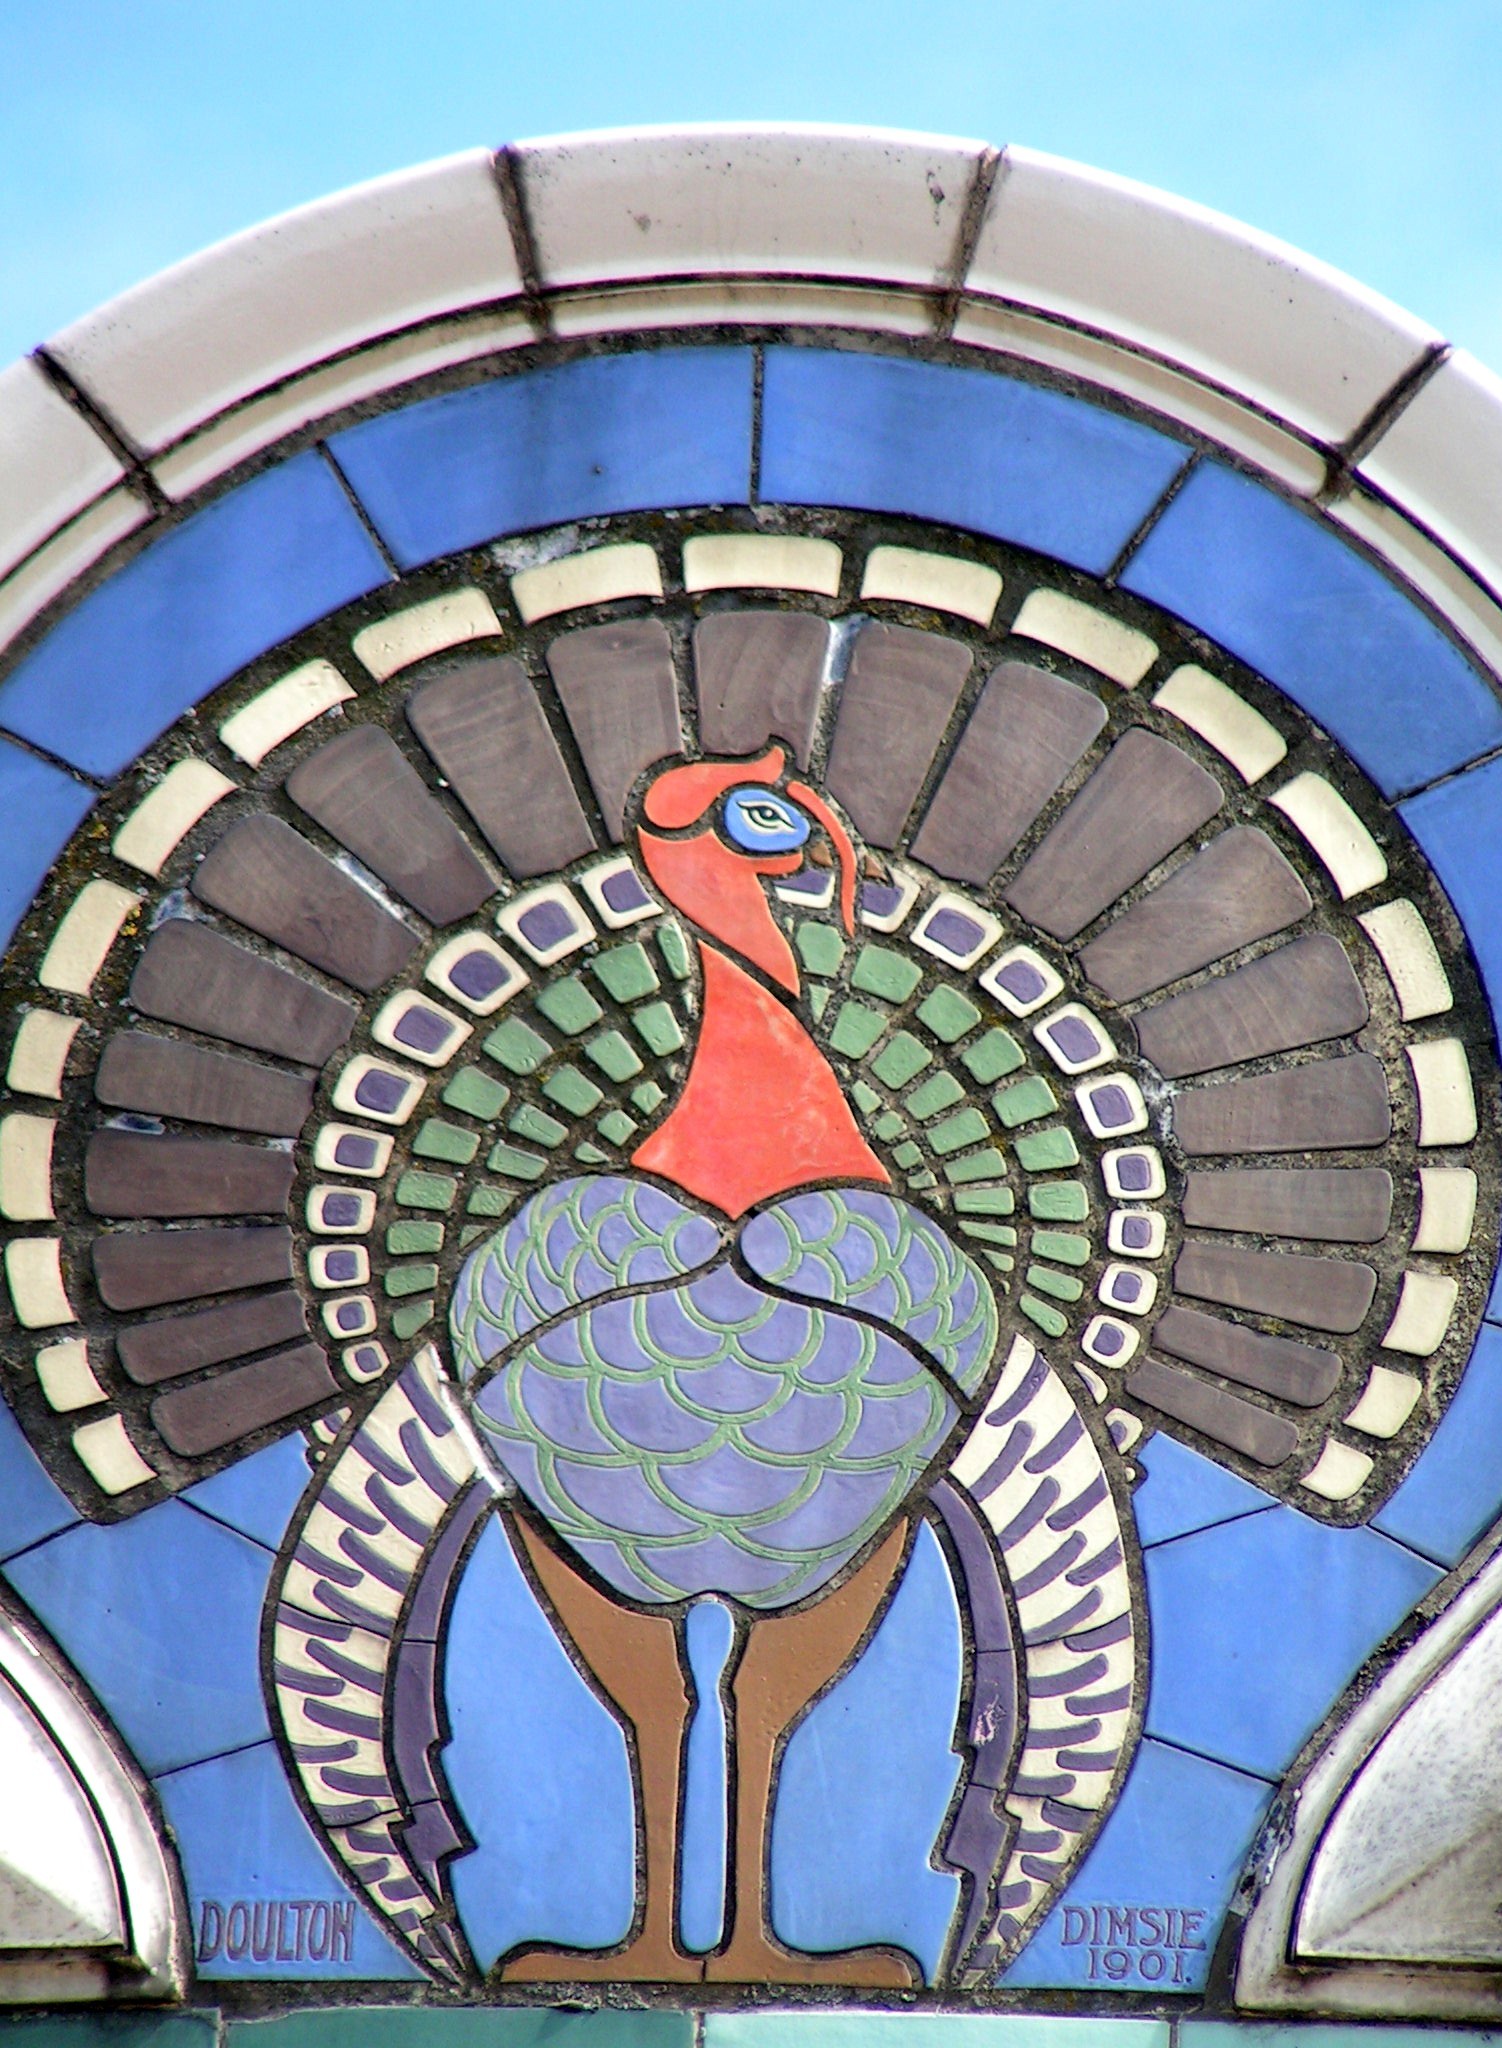 Art Nouveau tiles